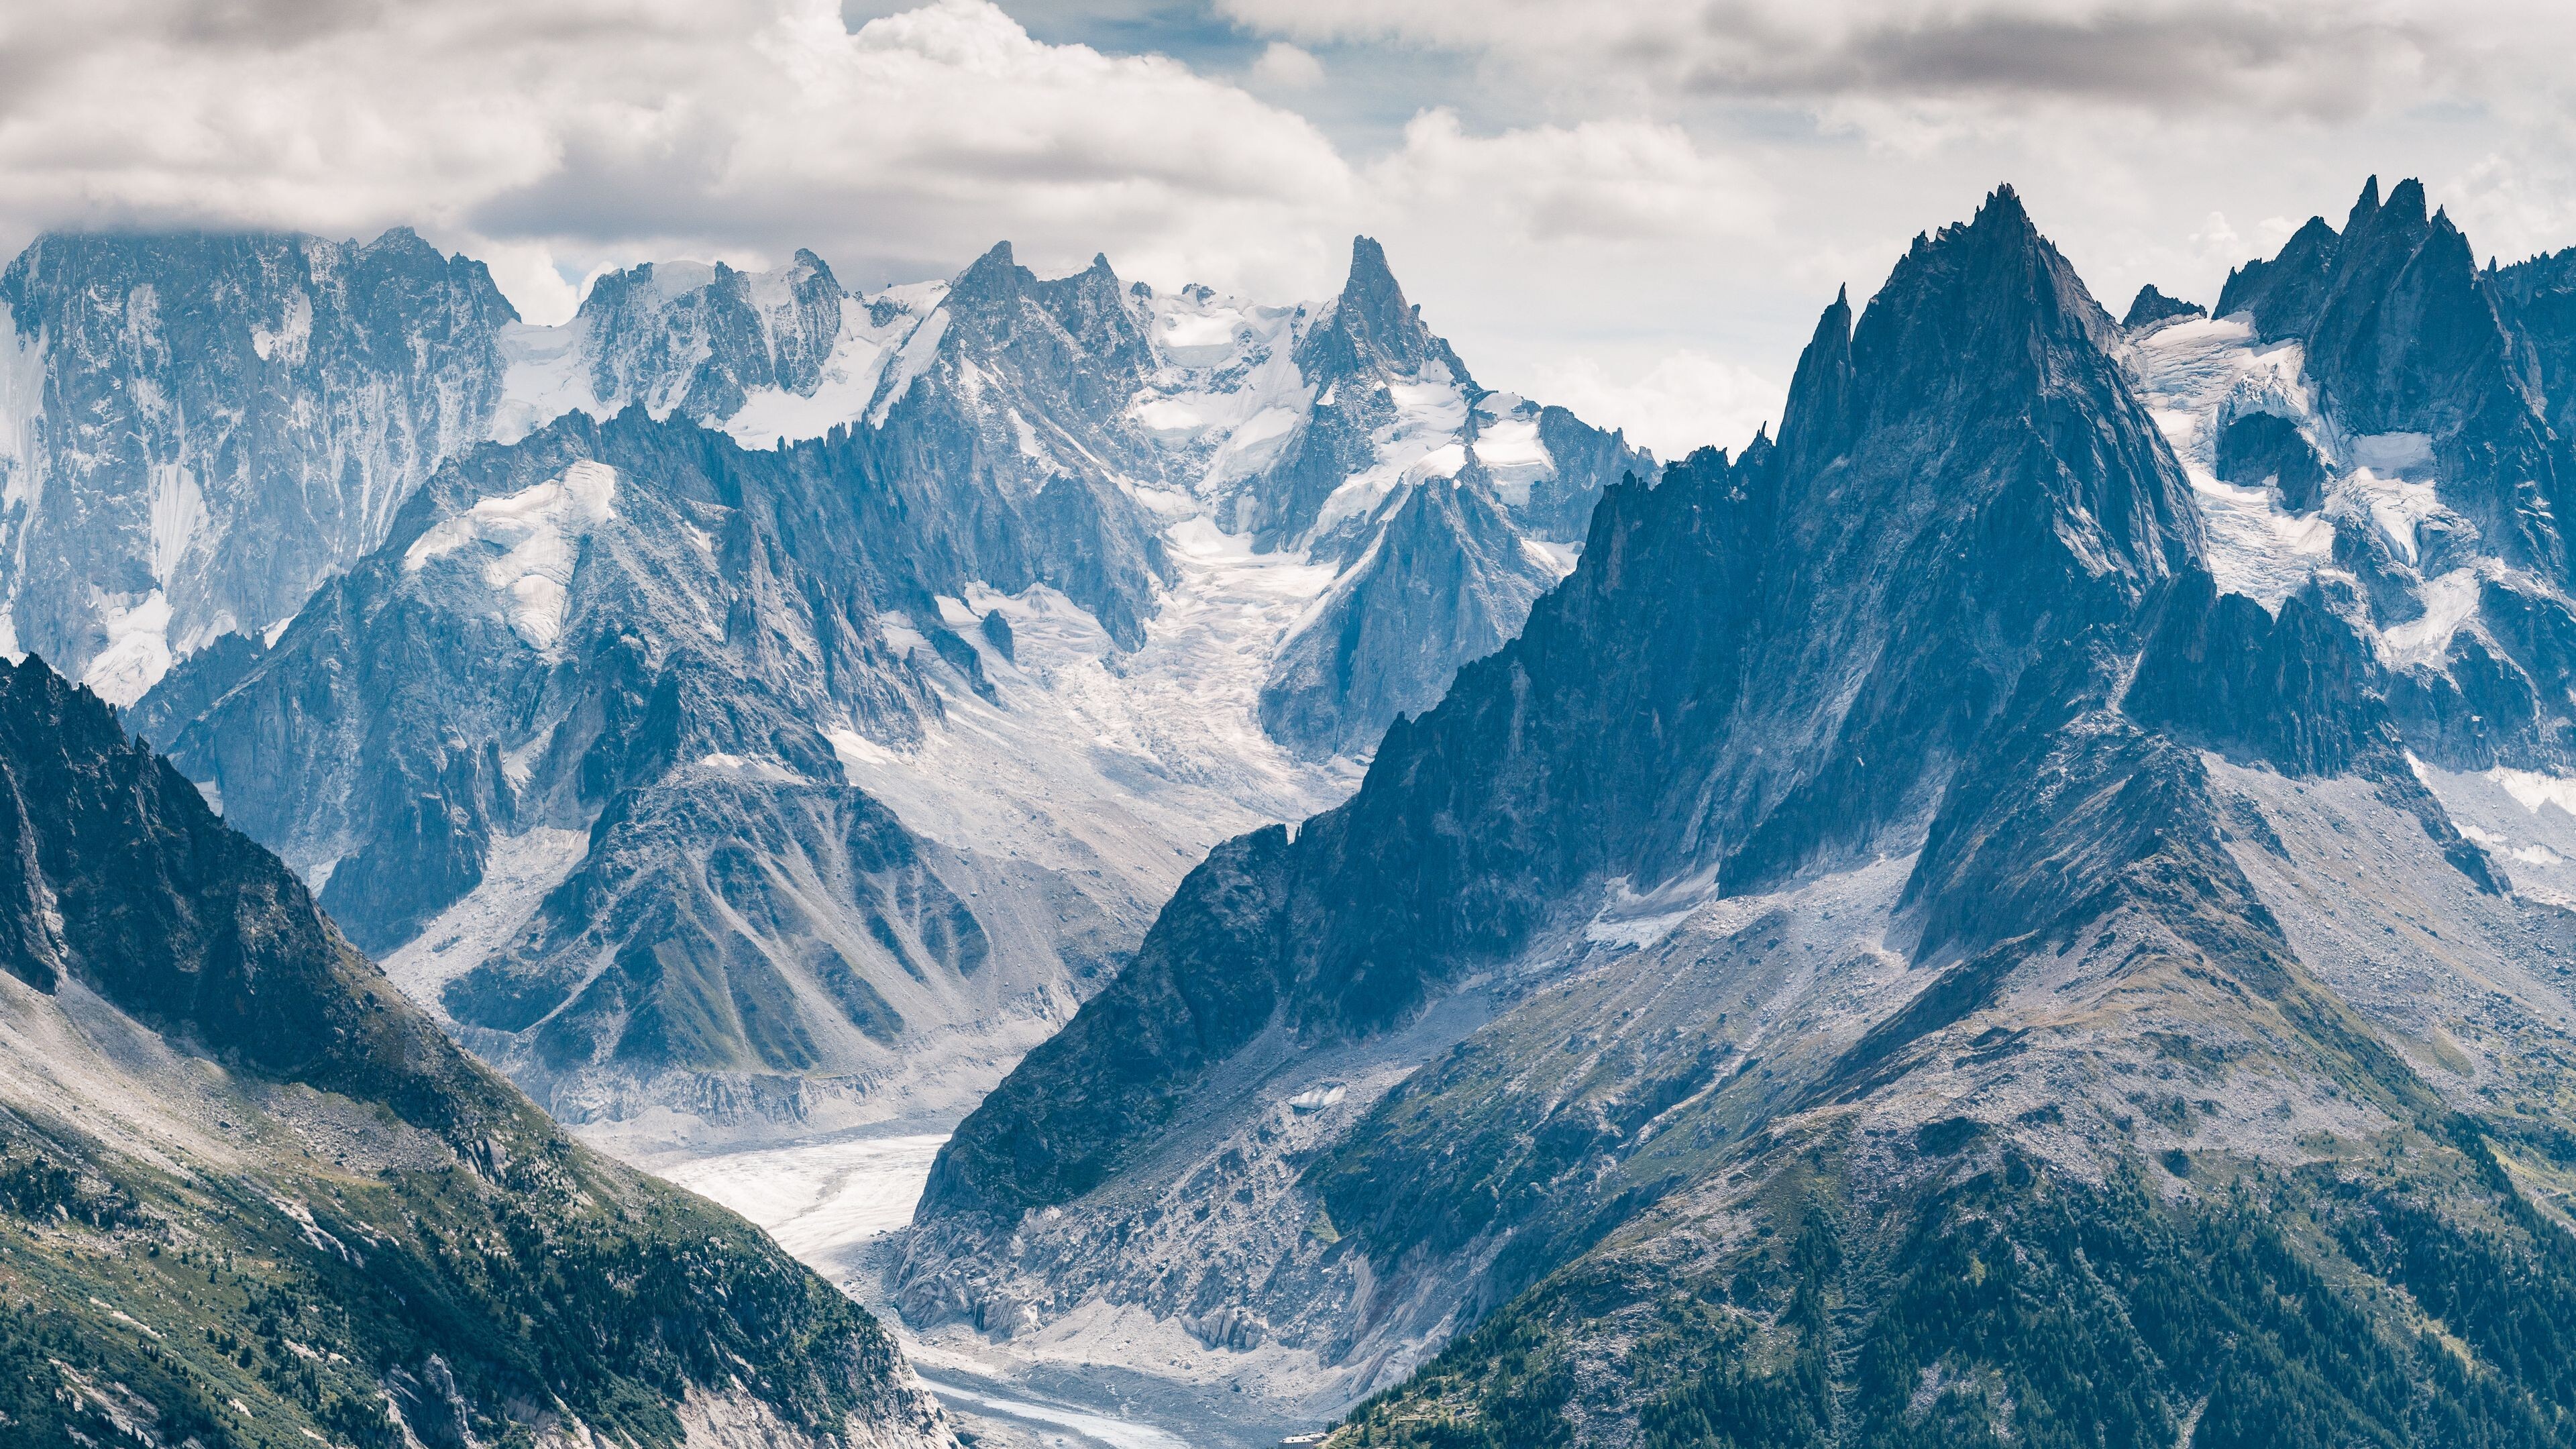 Glacier: Chamonix-Mont-Blanc, Mer de Glace, France, Mountain range, Snow. 3840x2160 4K Wallpaper.